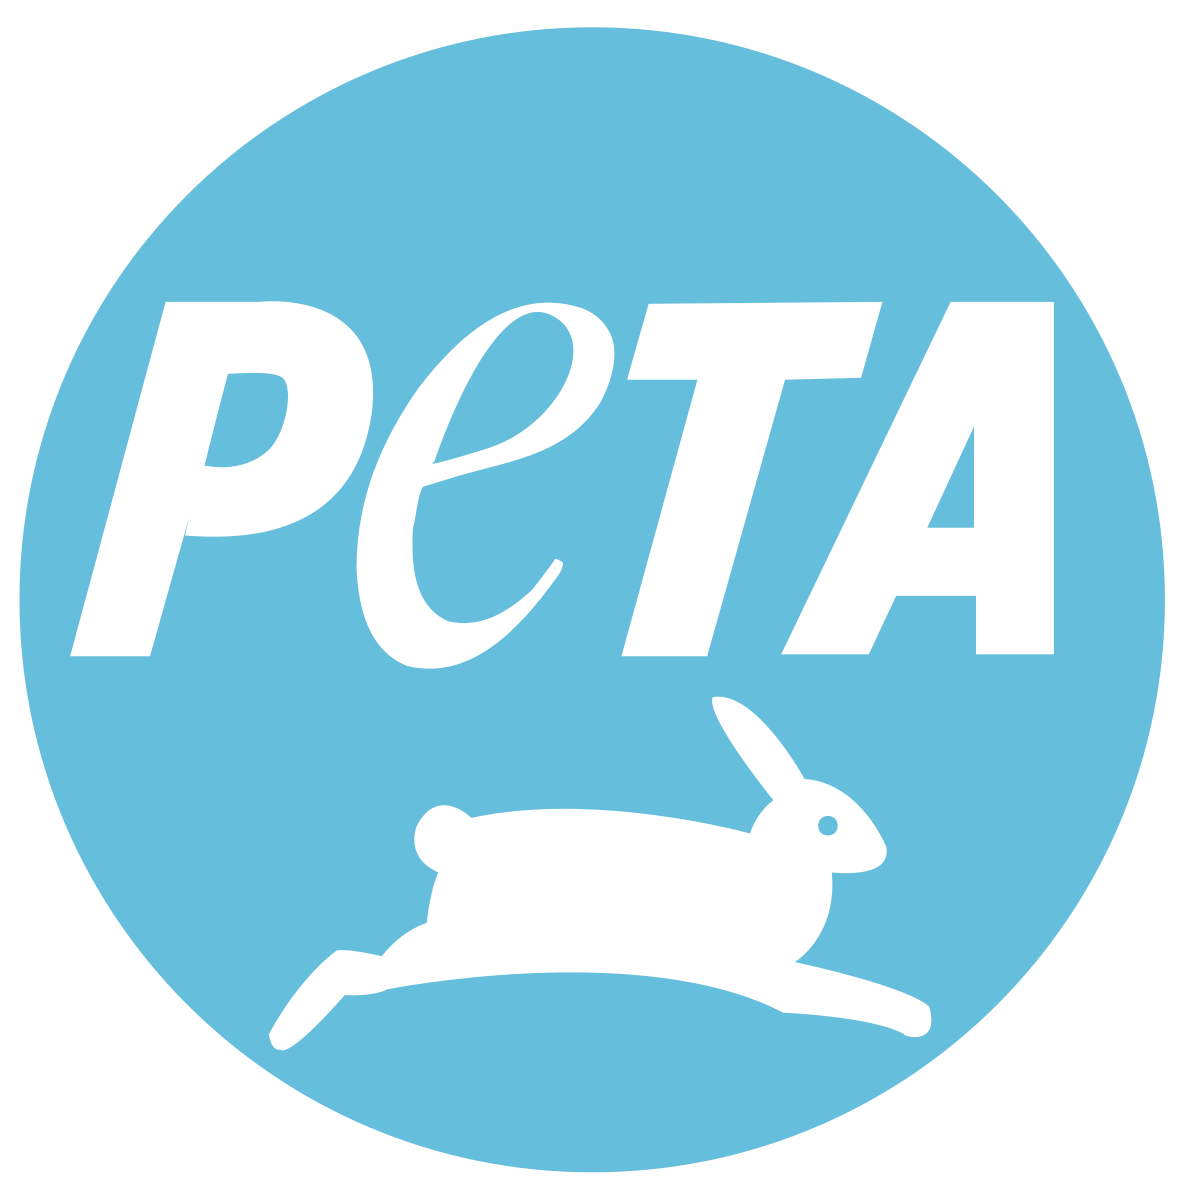 Company logo of PETA